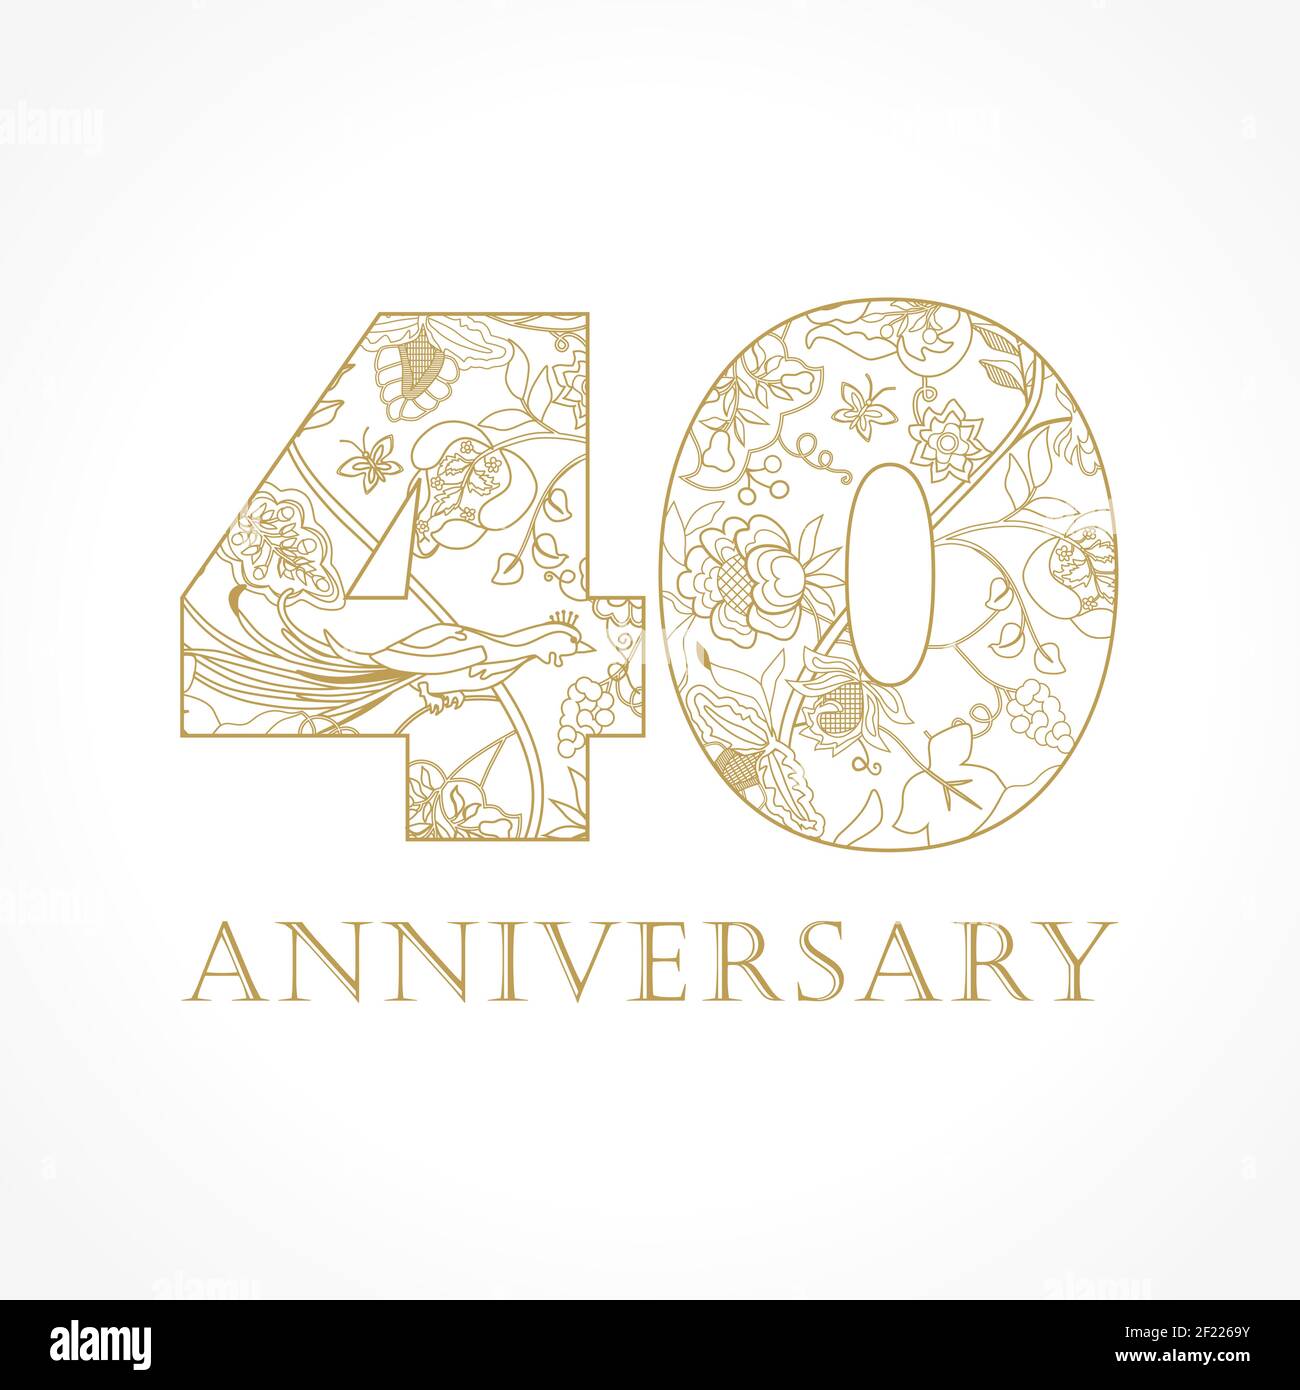 Kreatives Logo Konzept des 40th-jährigen Jubiläums in ethnischen Mustern und Paradiesvögeln. Isolierte abstrakte Grafik-Design-Vorlage. Top-40-Schild. Stock Vektor